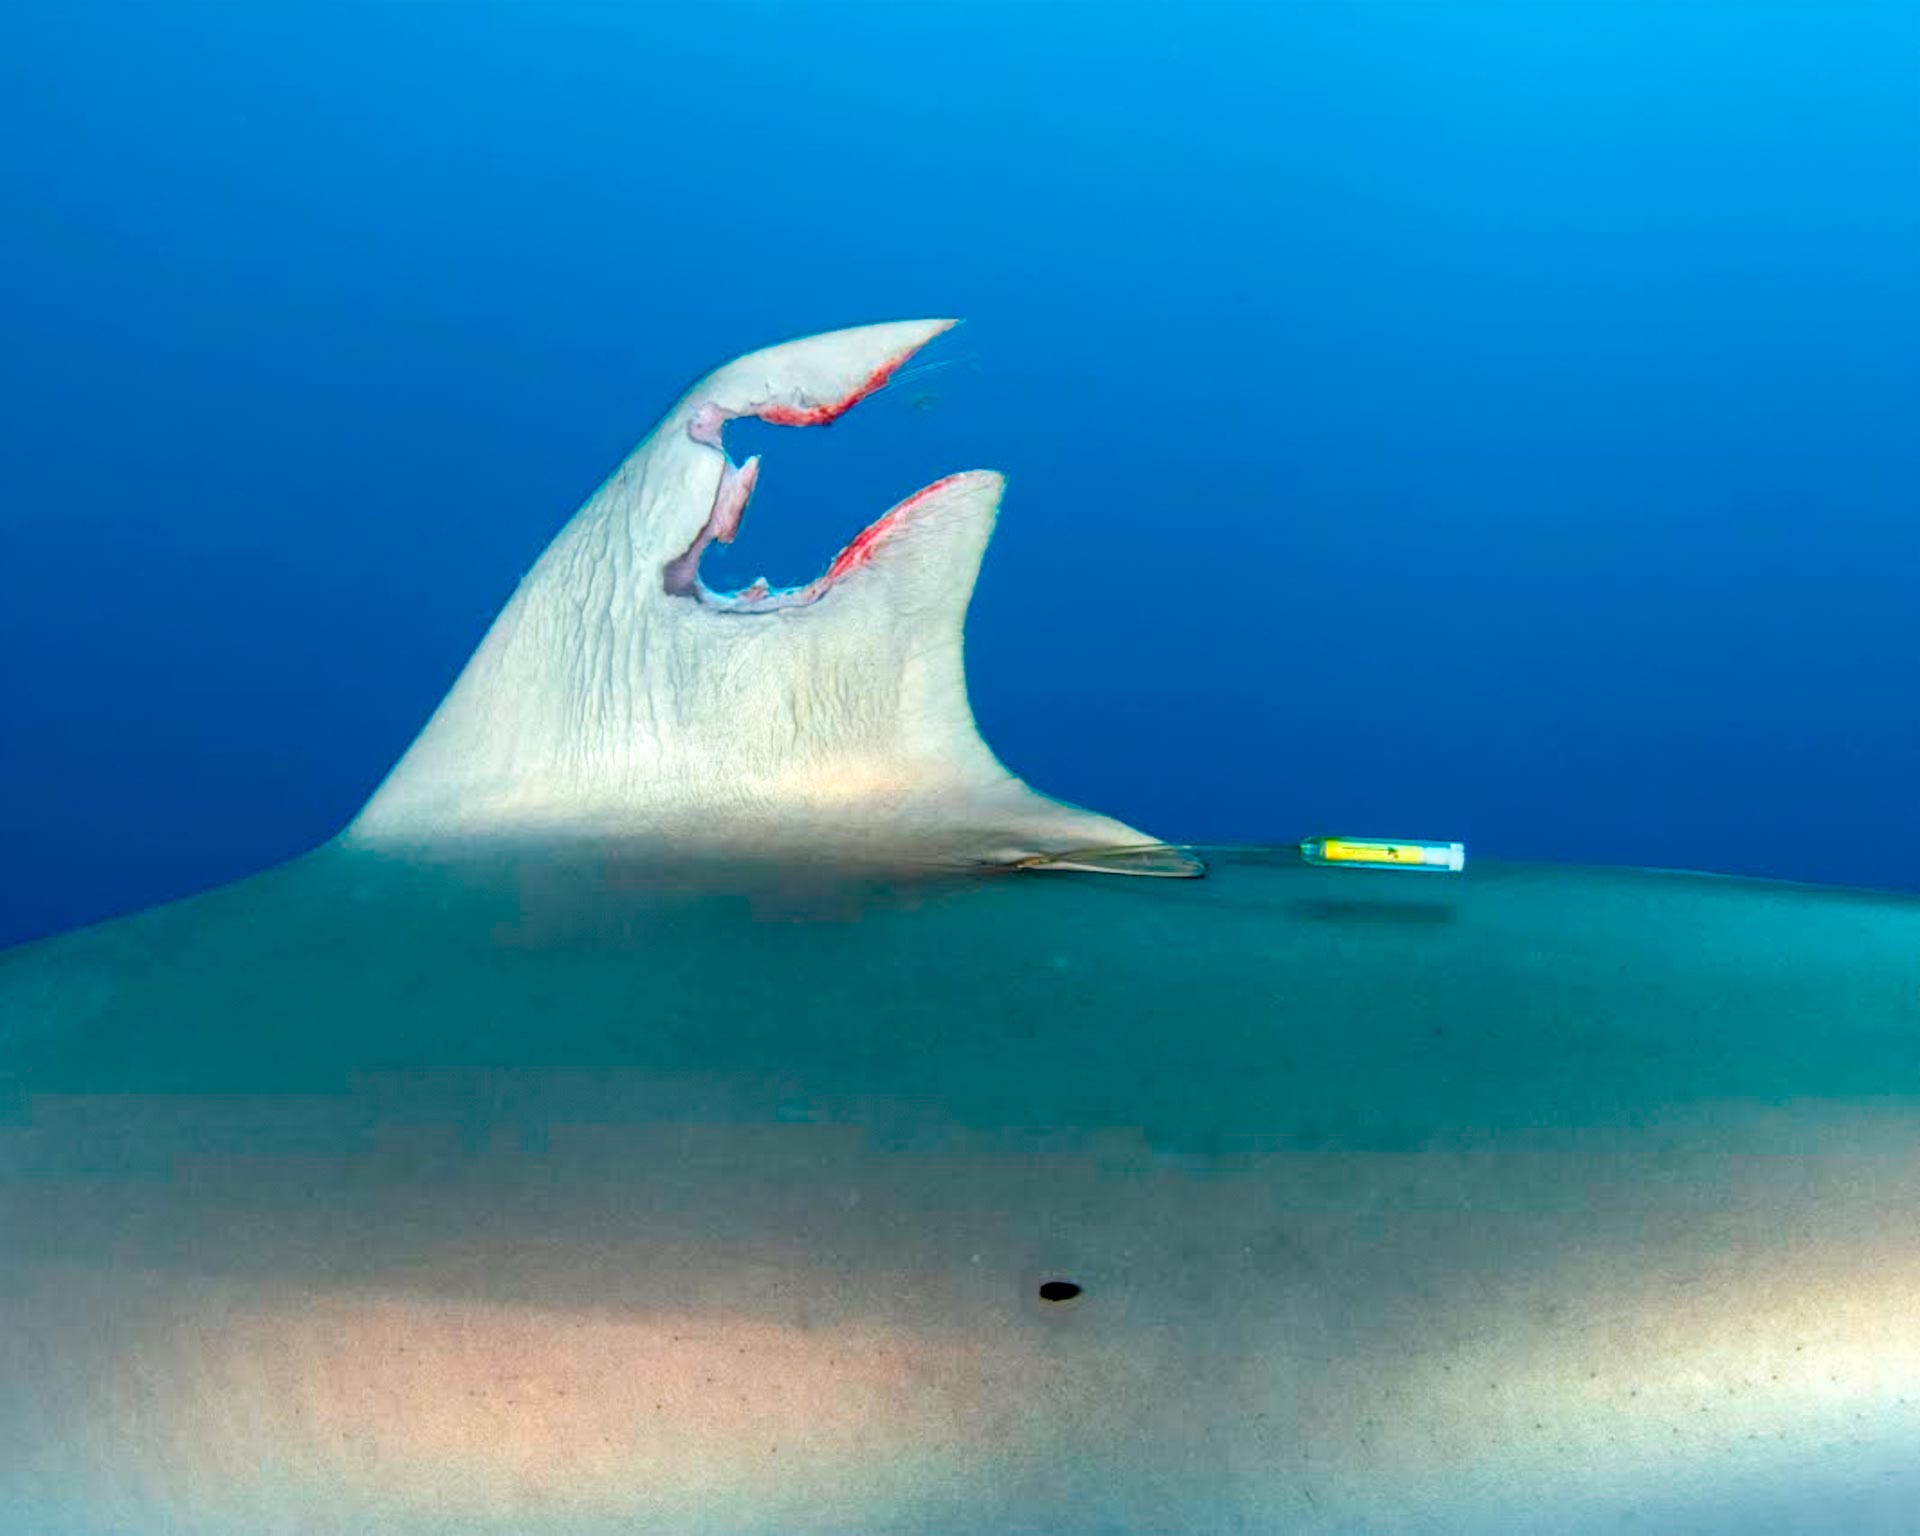 研究人员意外发现鲨鱼的神奇力量 能让被严重破坏的背鳍再生